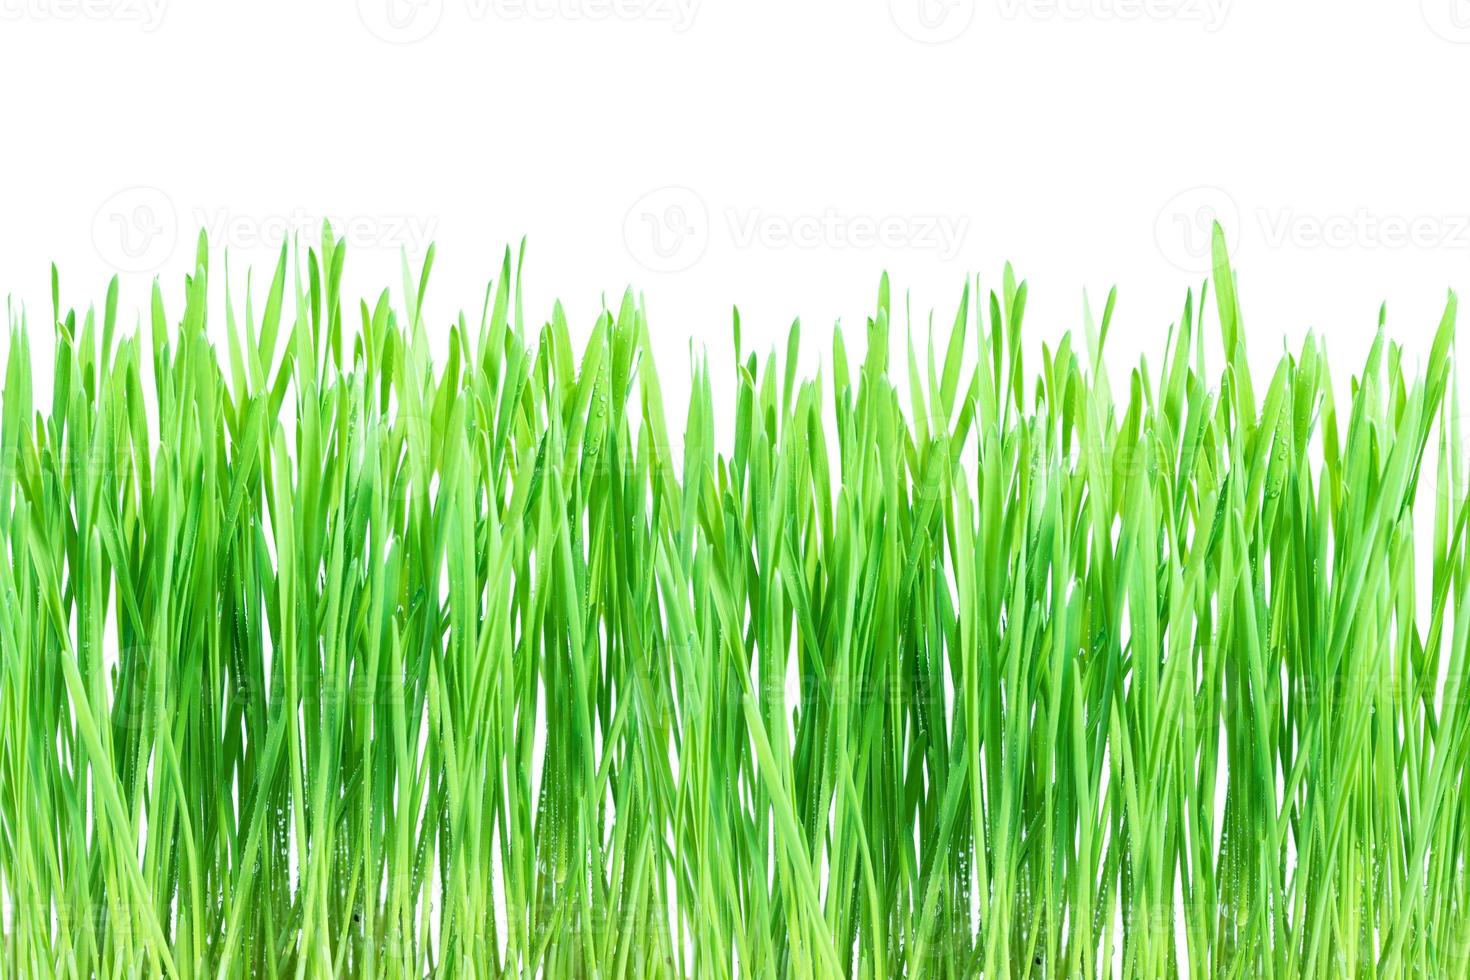 frisches grünes weizengras mit tropfen tau auf weiß foto